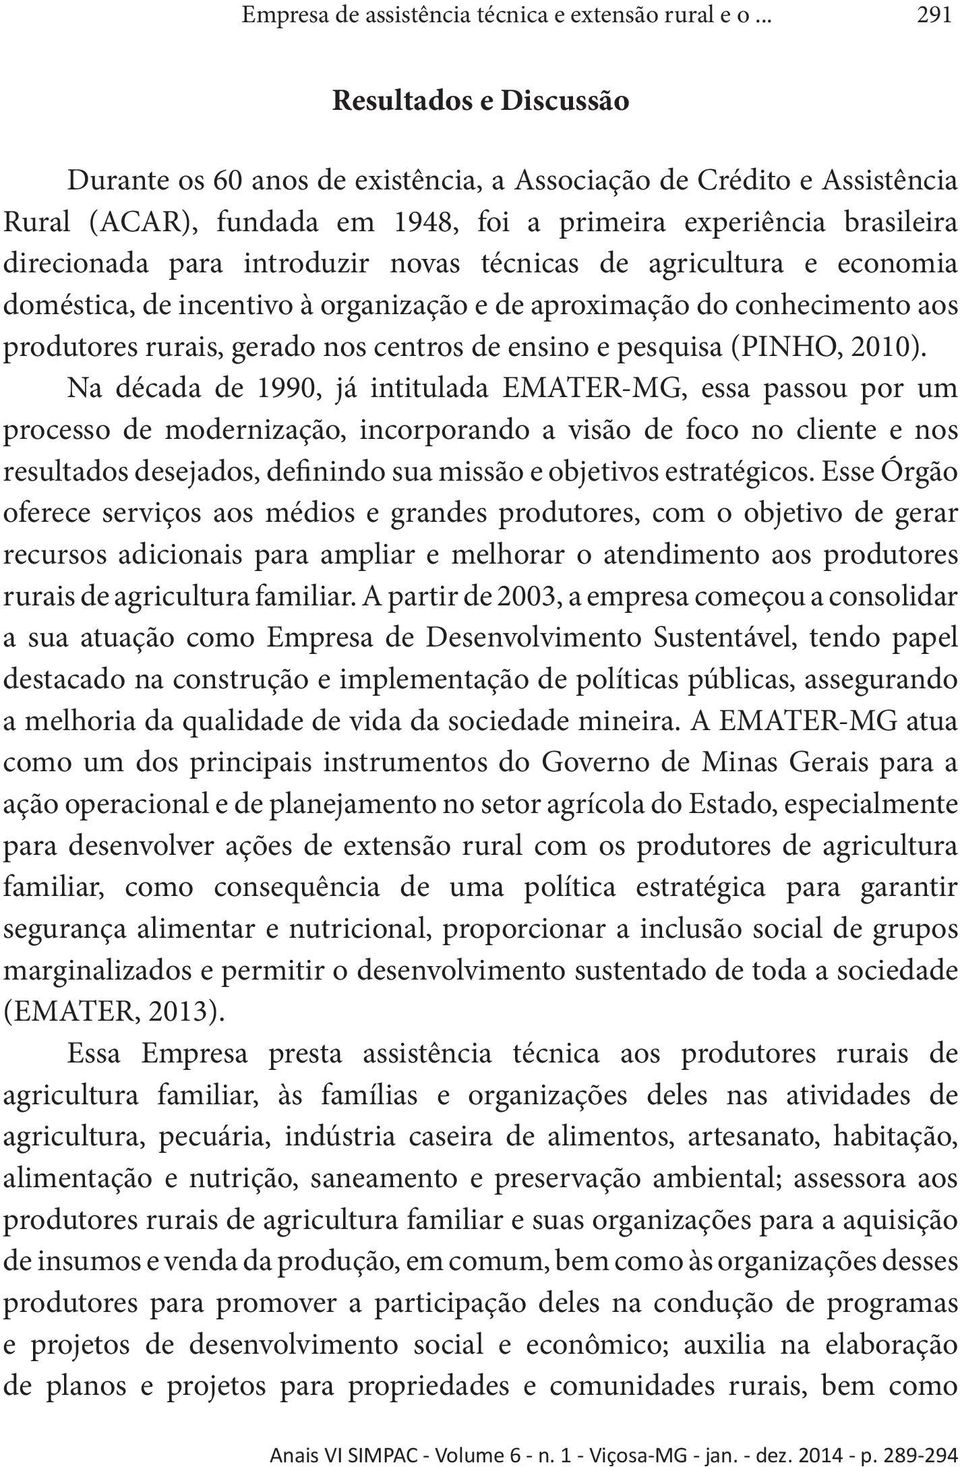 novas técnicas de agricultura e economia doméstica, de incentivo à organização e de aproximação do conhecimento aos produtores rurais, gerado nos centros de ensino e pesquisa (PINHO, 2010).